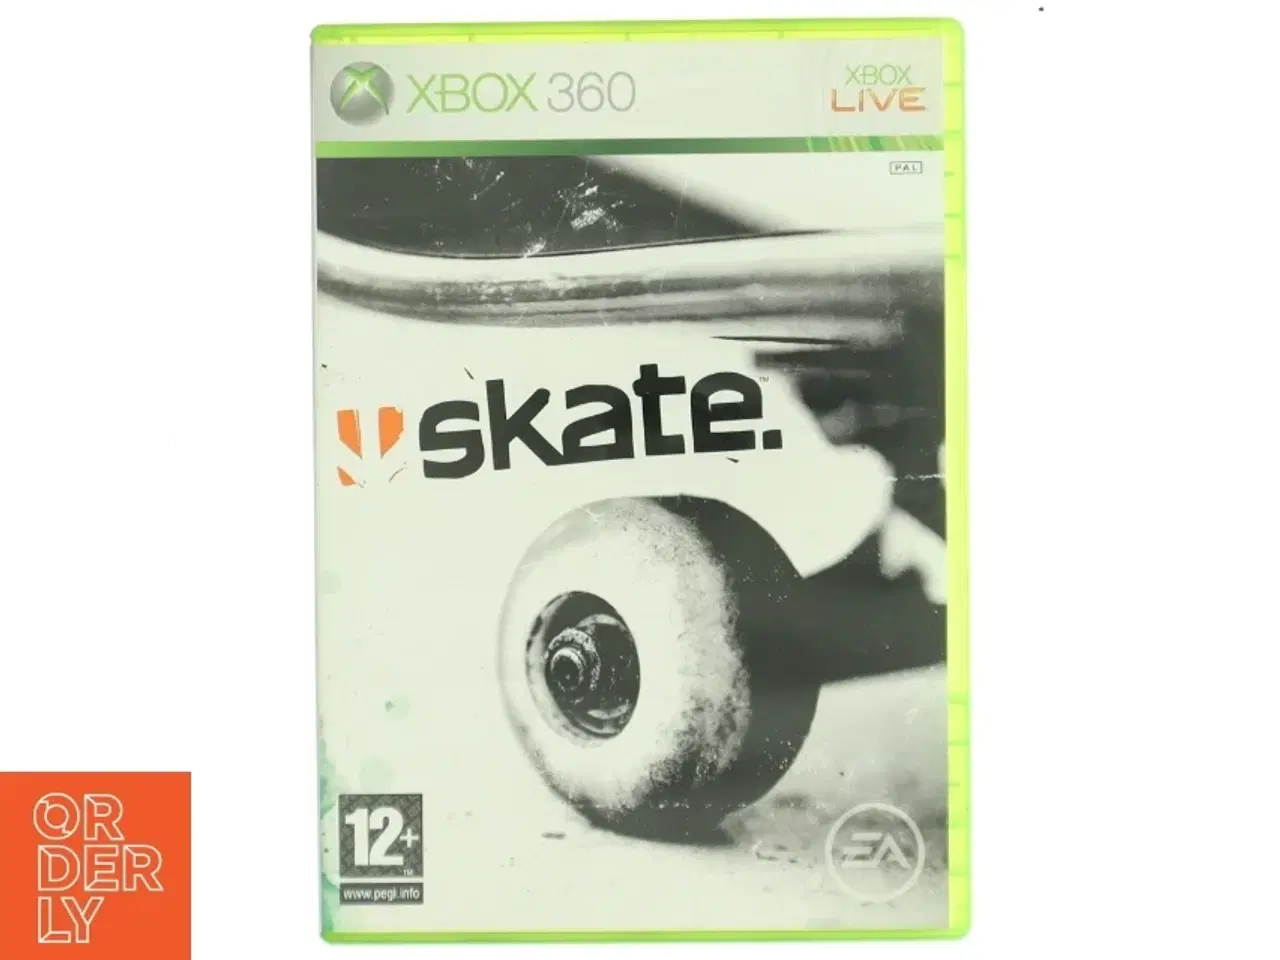 Billede 1 - Skate videospil til Xbox 360 fra Electronic Arts